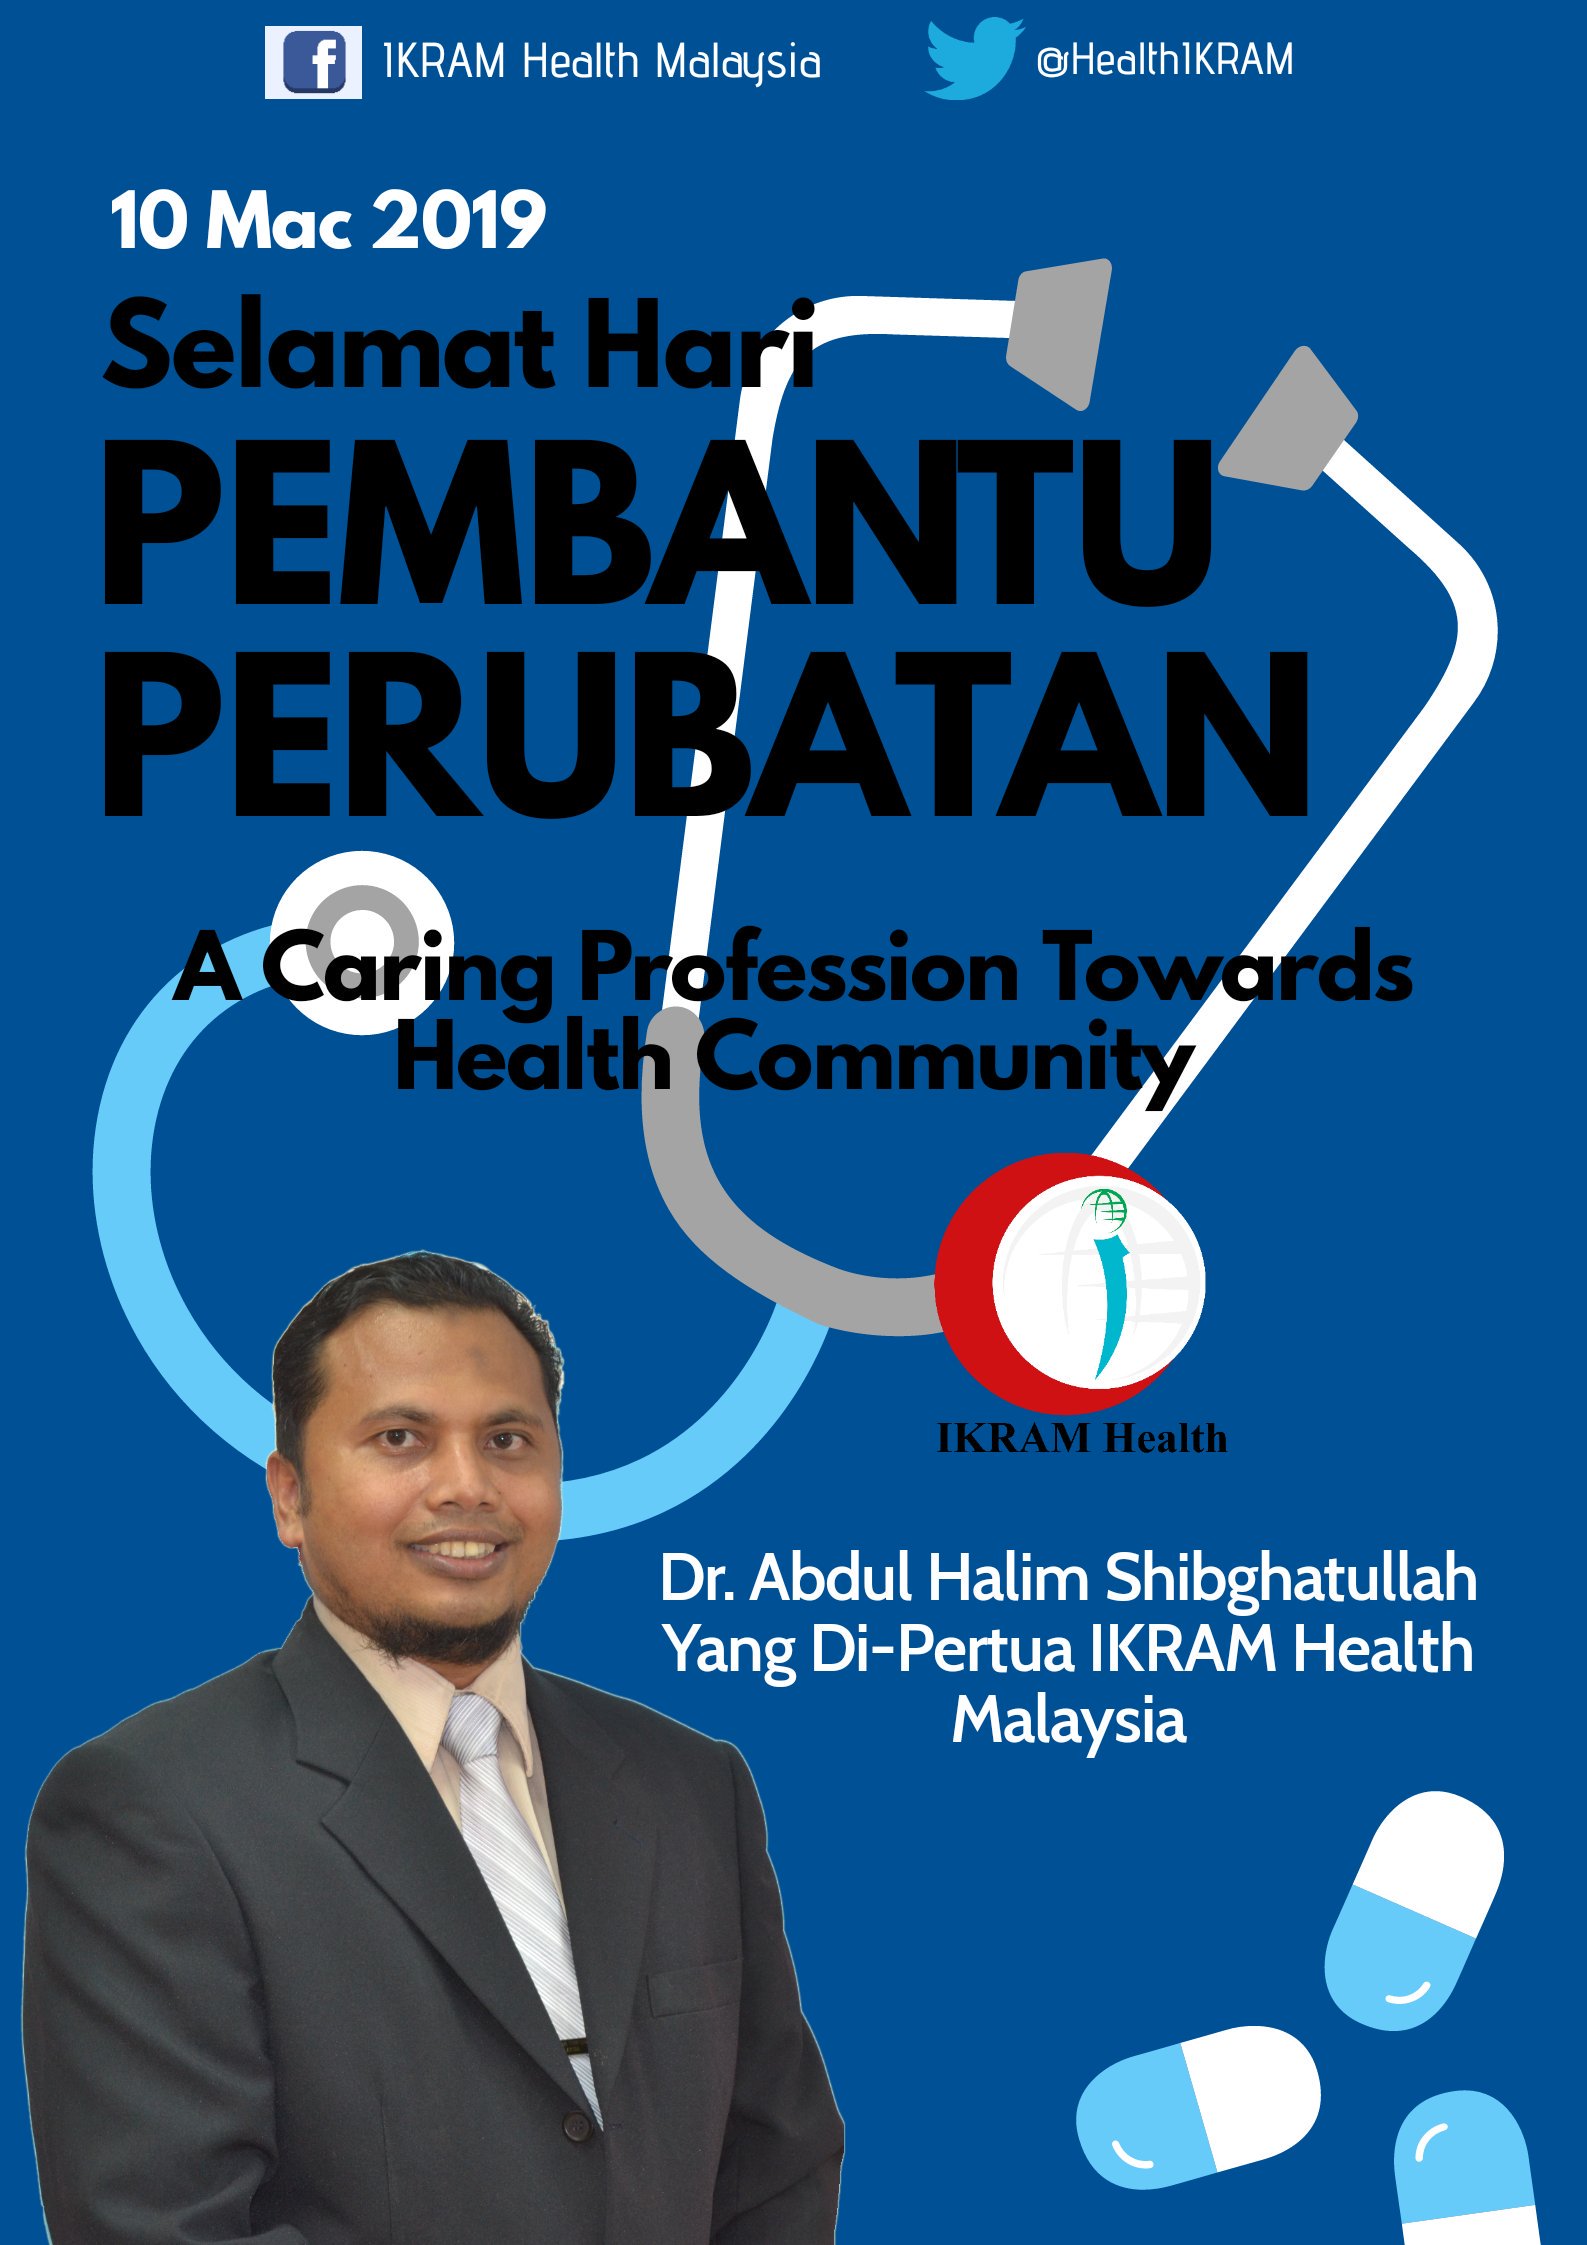 Ikram Health Malaysia On Twitter Tidak Terlewat Untuk Kami Ucapkan Selamat Hari Pembantu Perubatan Kepada Ahli Dan Khususnya Semua Warga Pembantu Perubatan Yang Telah Banyak Berjasa Kepada Komuniti Rakyat Malaysia Ikramhealthmalaysia